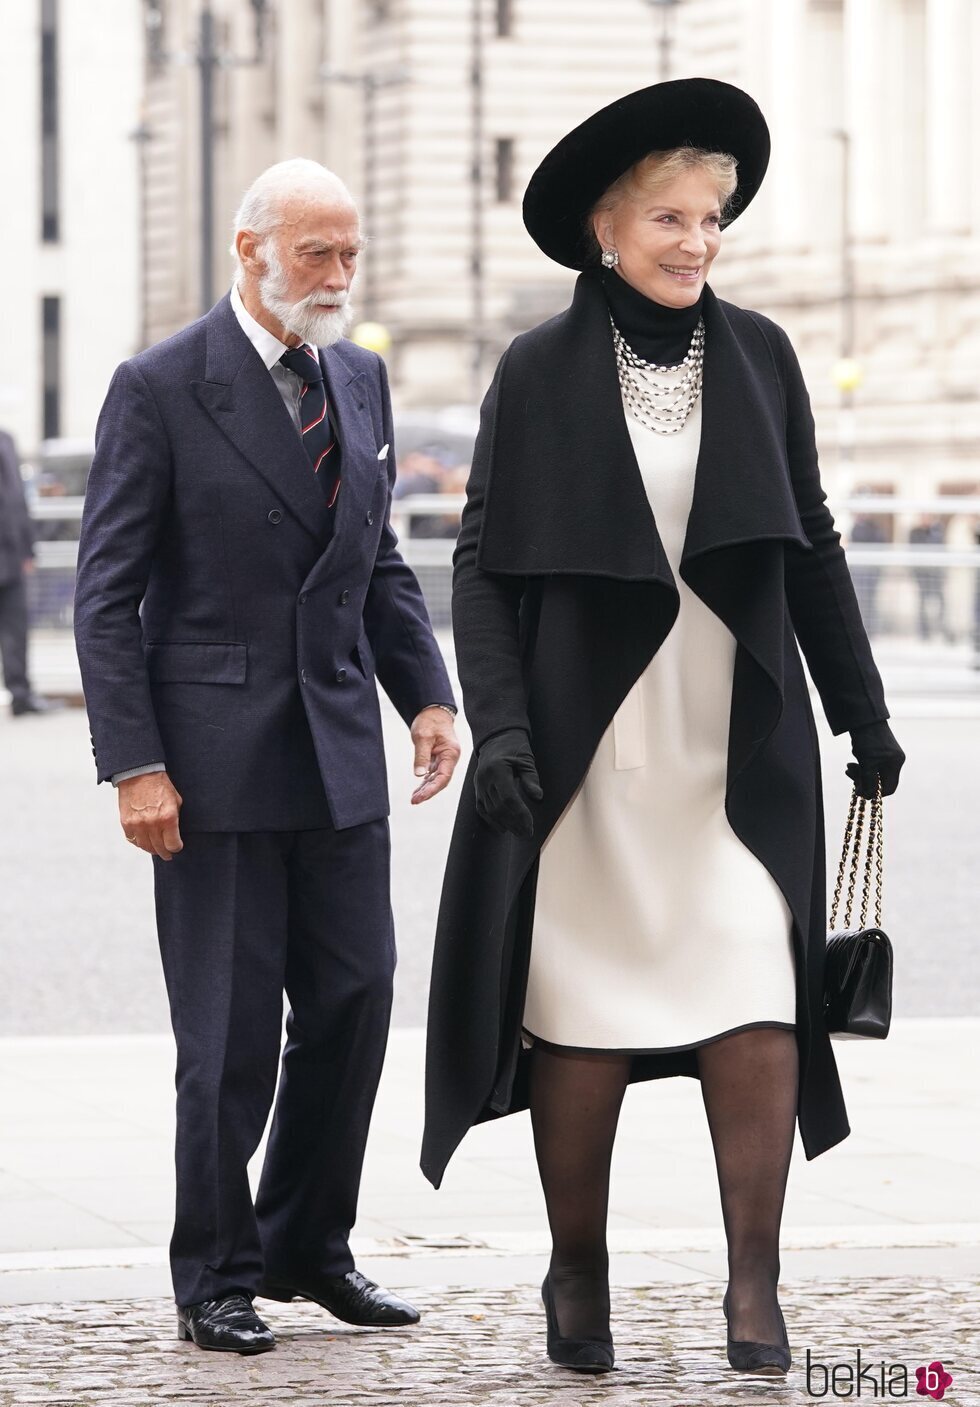 El Príncipe Michael de Kent y la Princesa Michael de Kent en el homenaje al Duque de Edimburgo